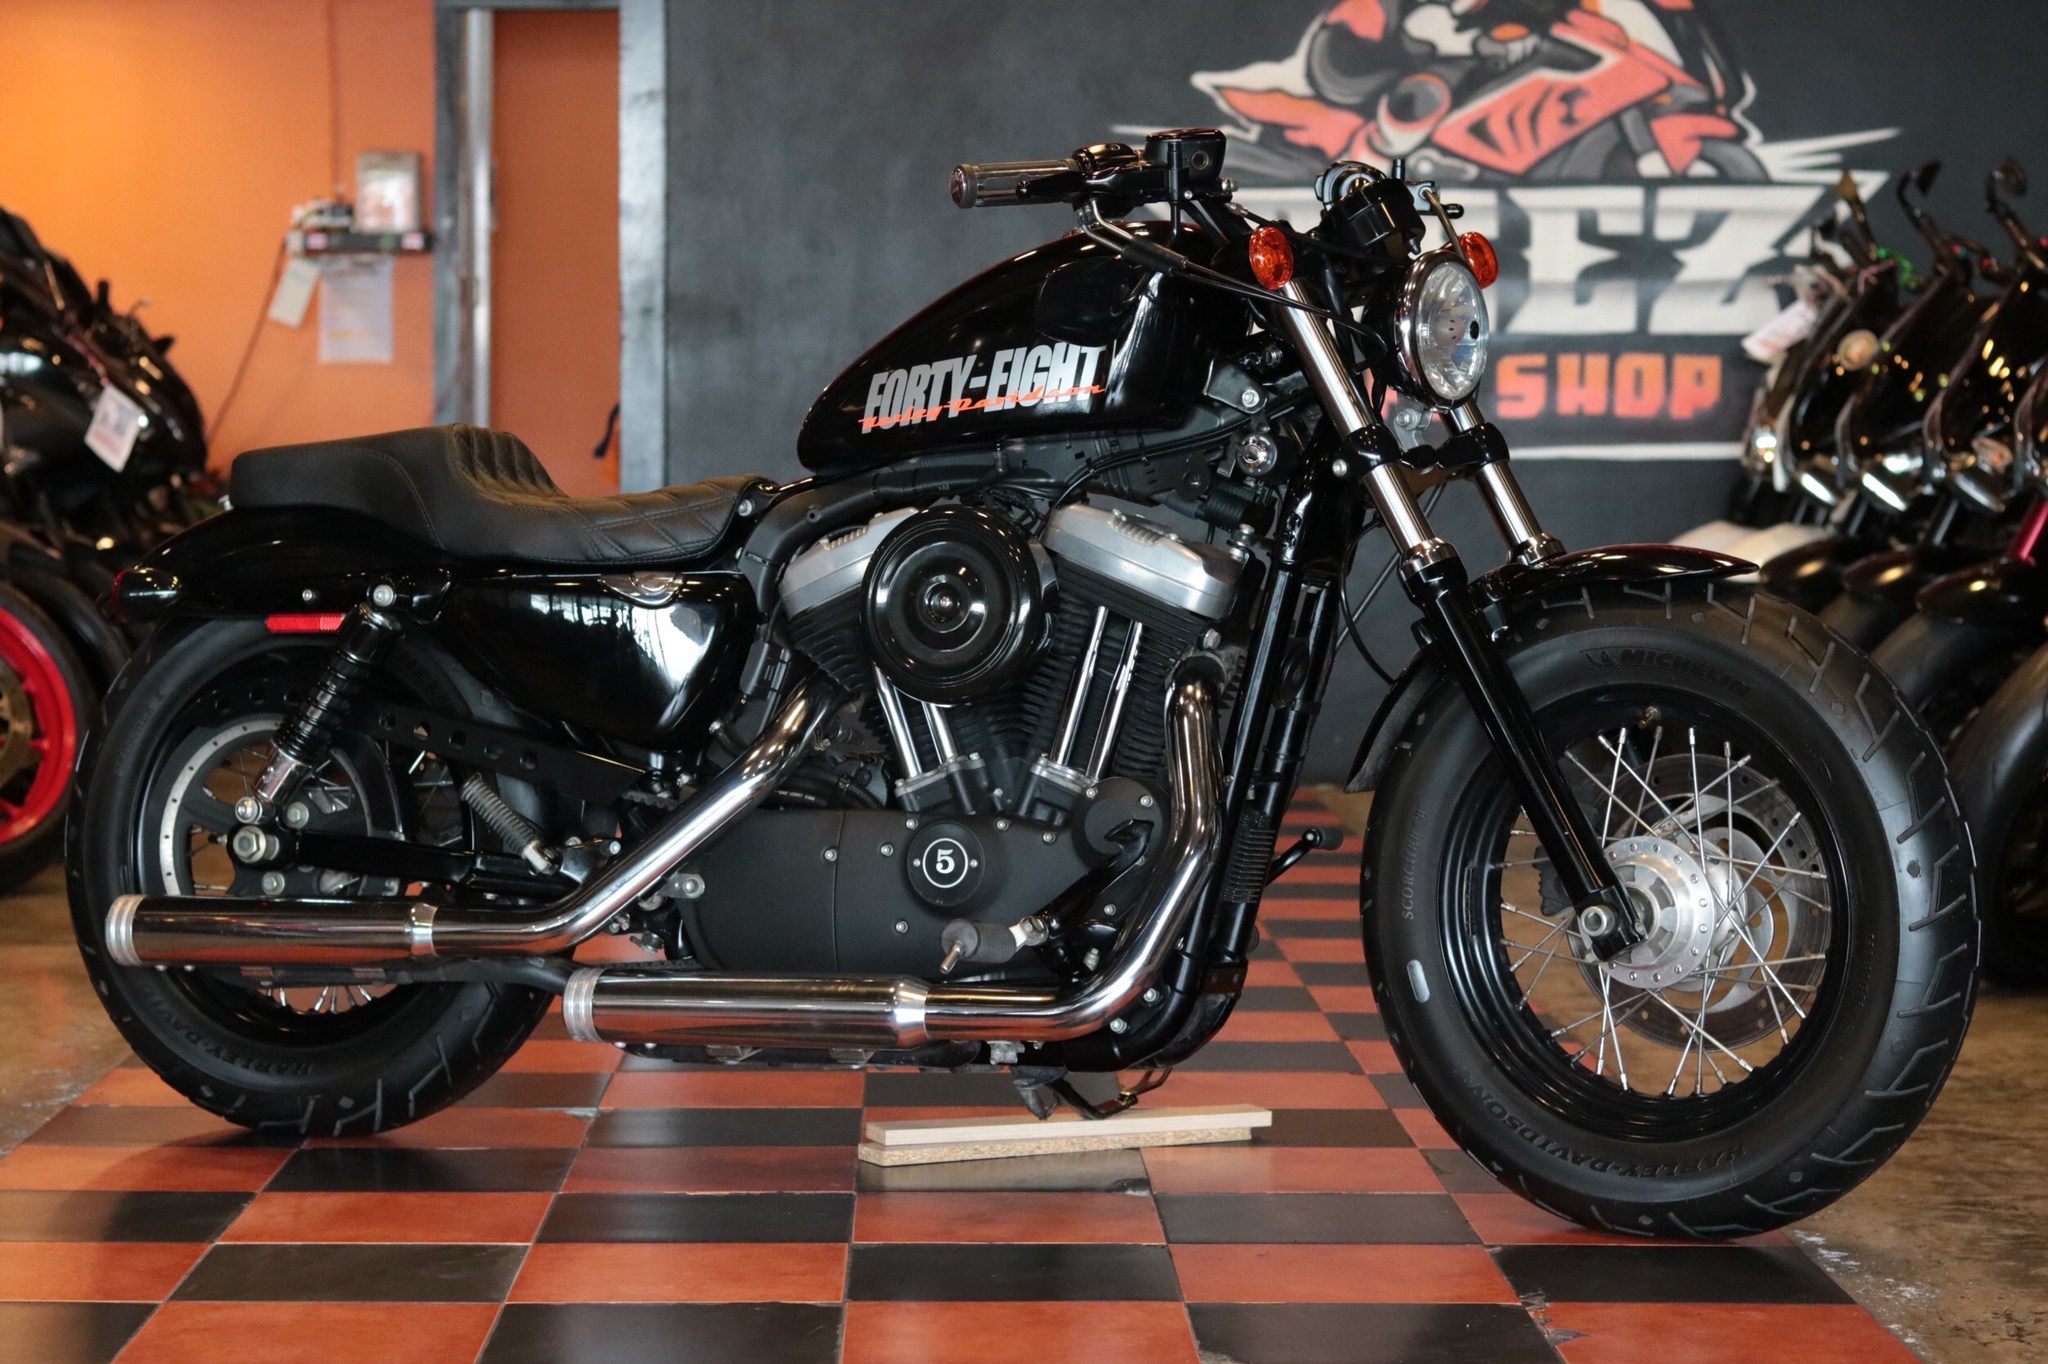 ขาย Harley Davidson Sportster 48 ปี 2013 สเปค US